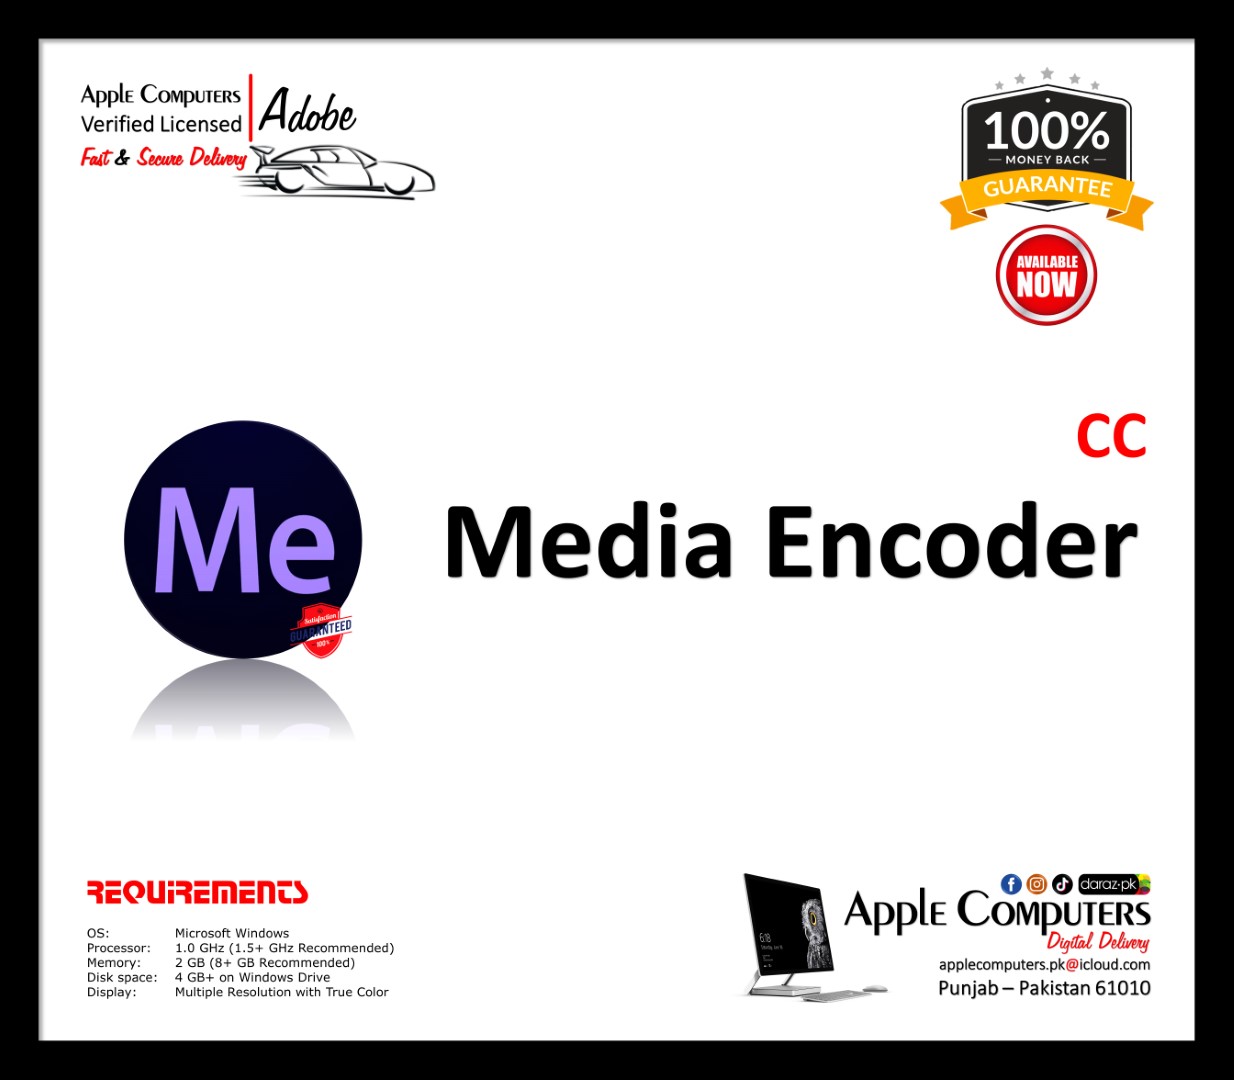 adobe media encoder cc price